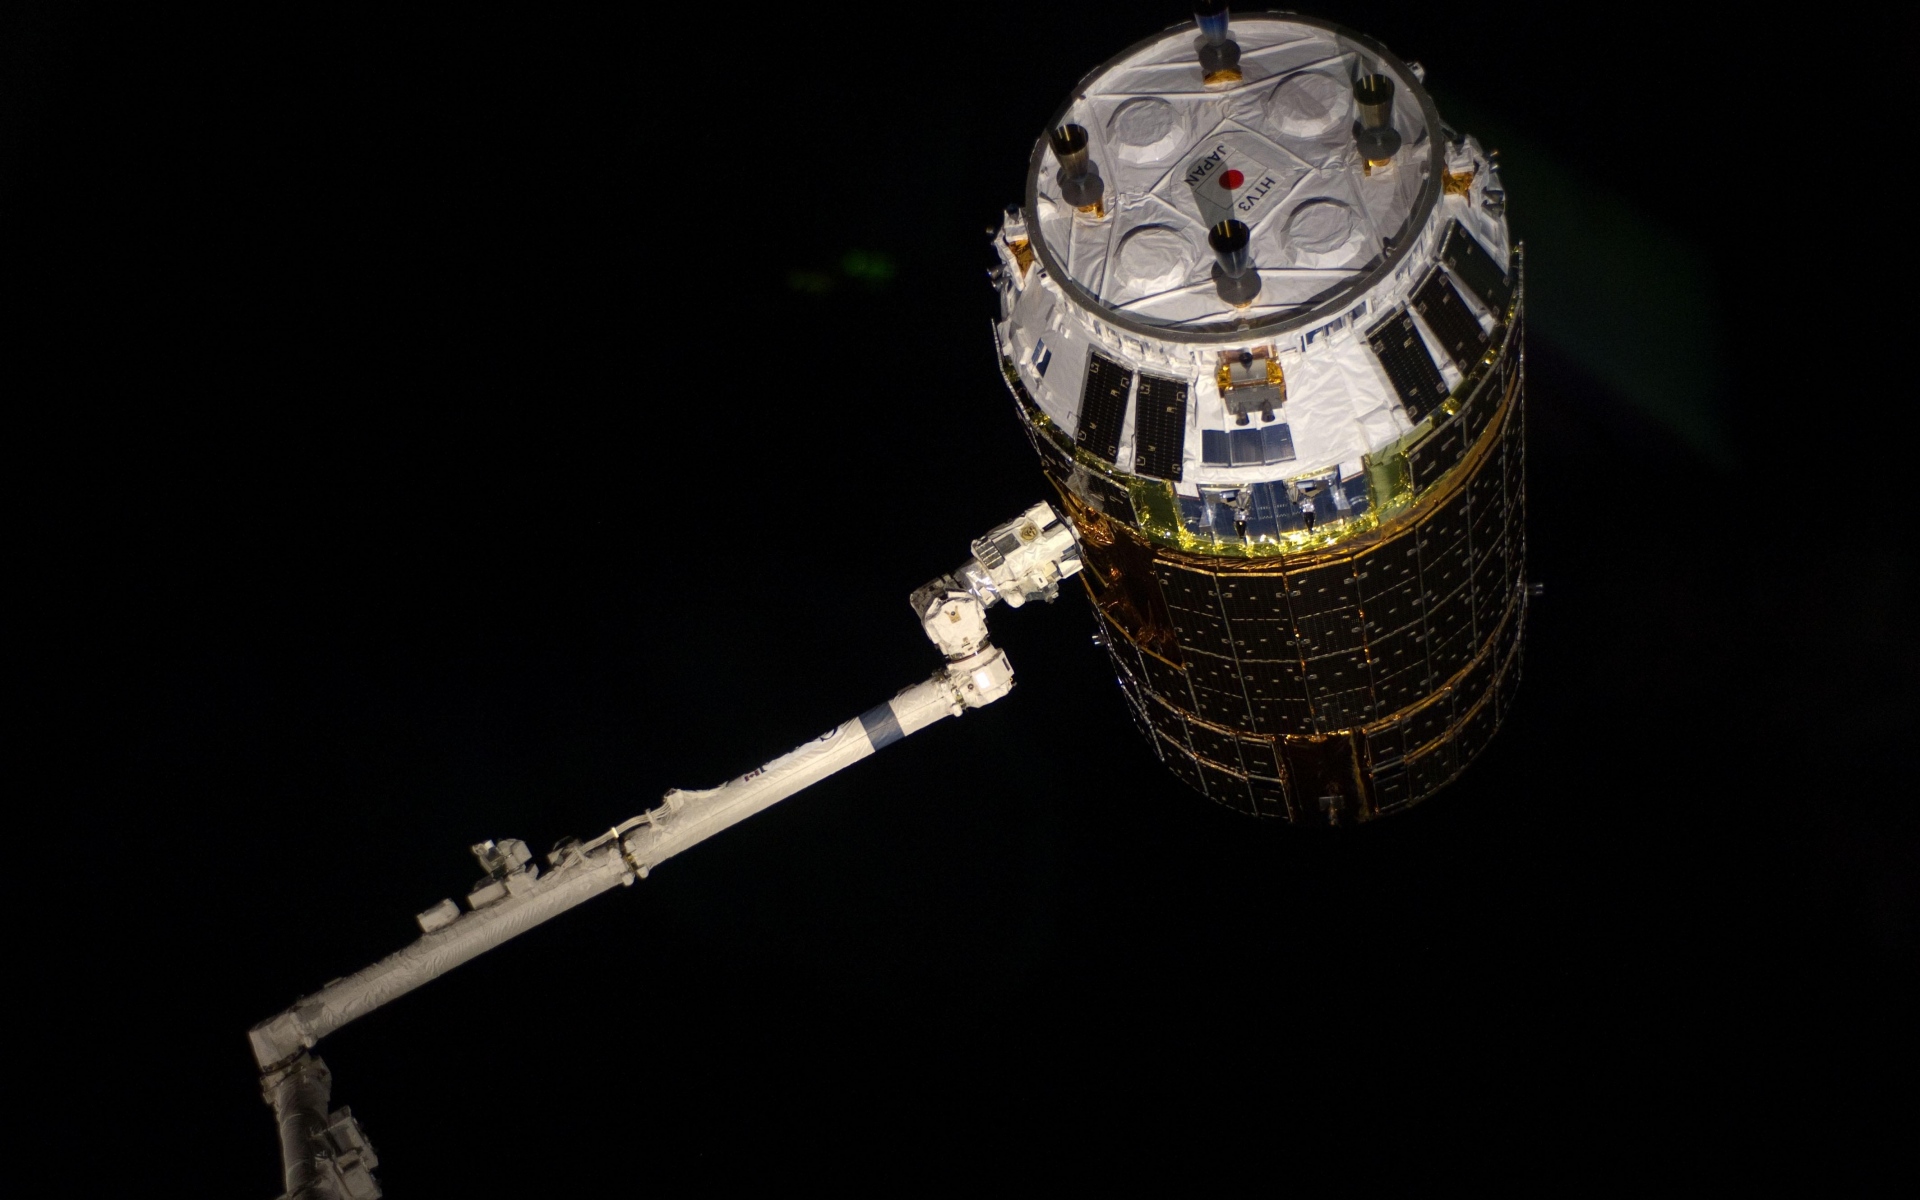 Картинки Космический корабль, kounotori 3, космос фото и обои на рабочий стол